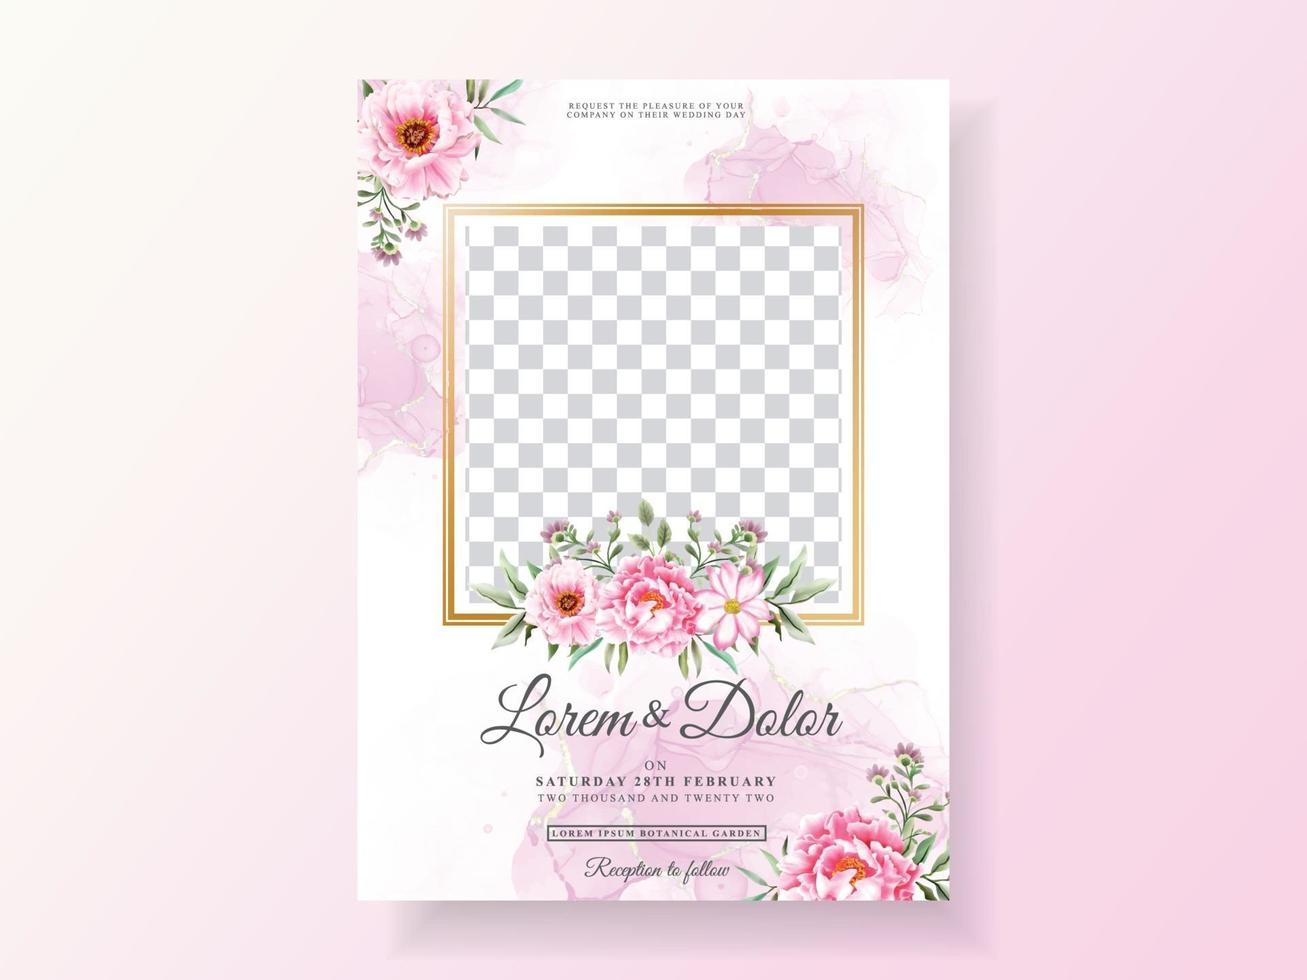 romantische hochzeitseinladungskarten floral aquarell vektor